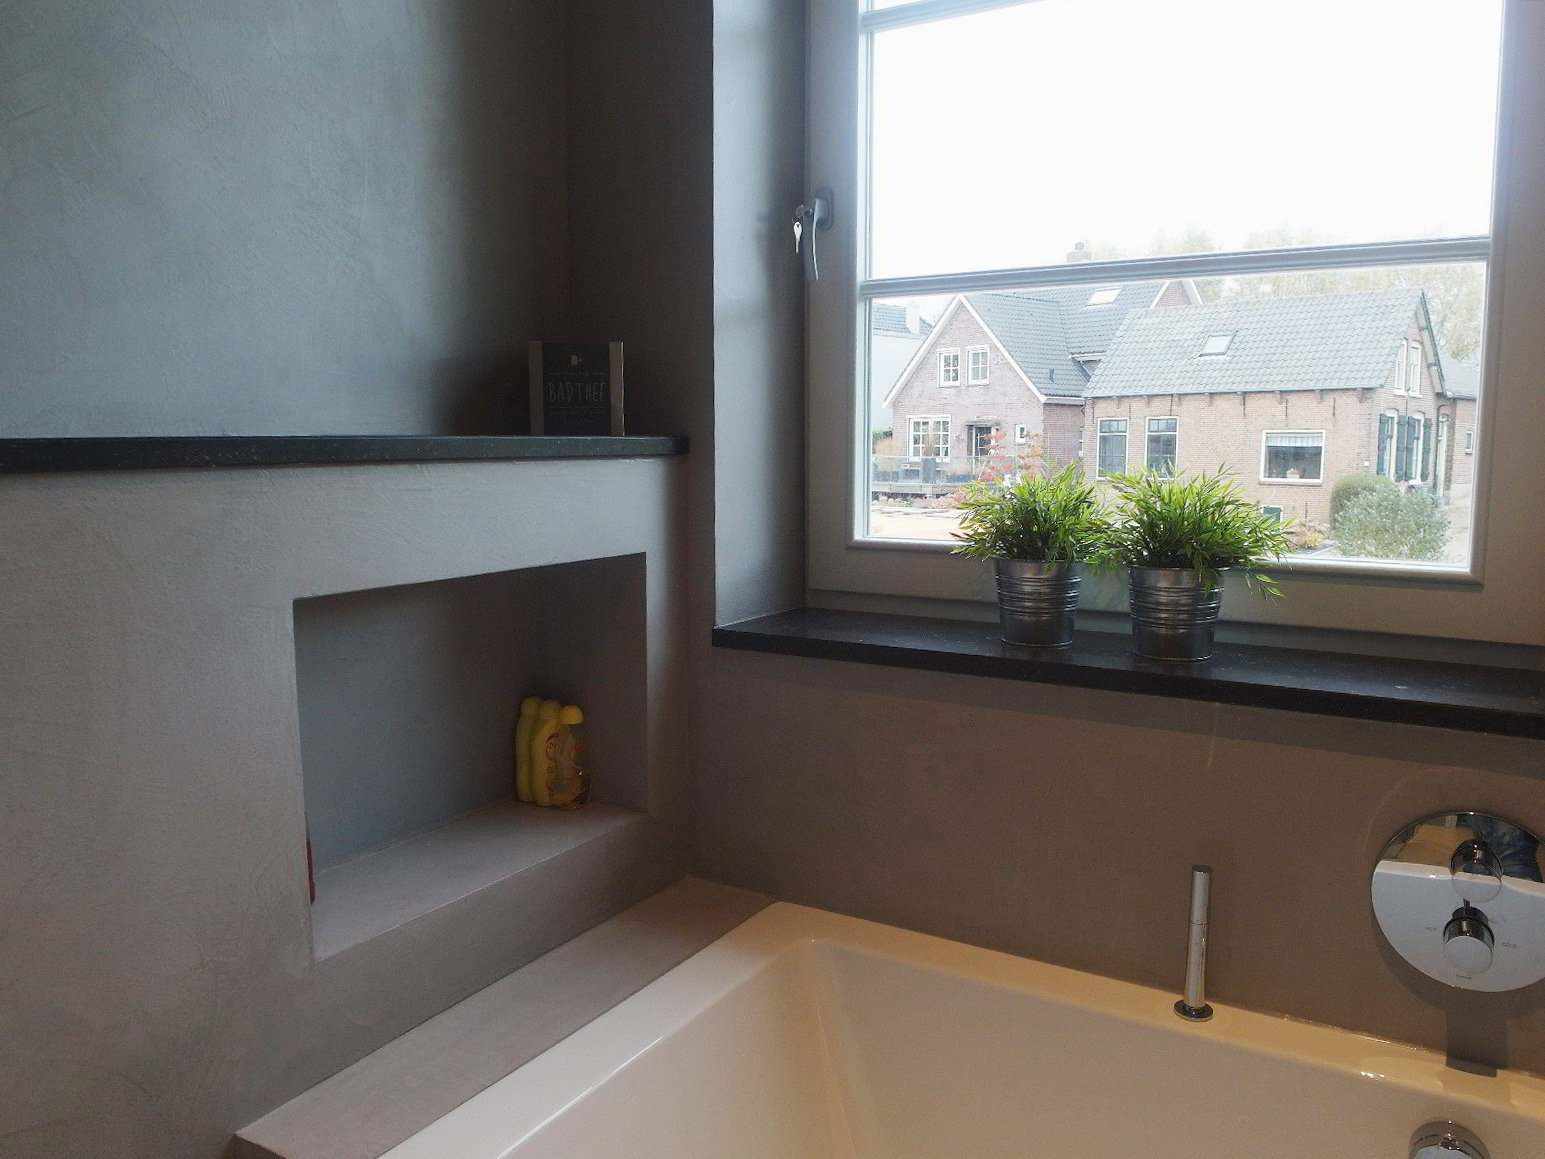 Microcemento sulla parete, sul pavimento e sui mobili di un bagno in Olanda nel progetto Decas.